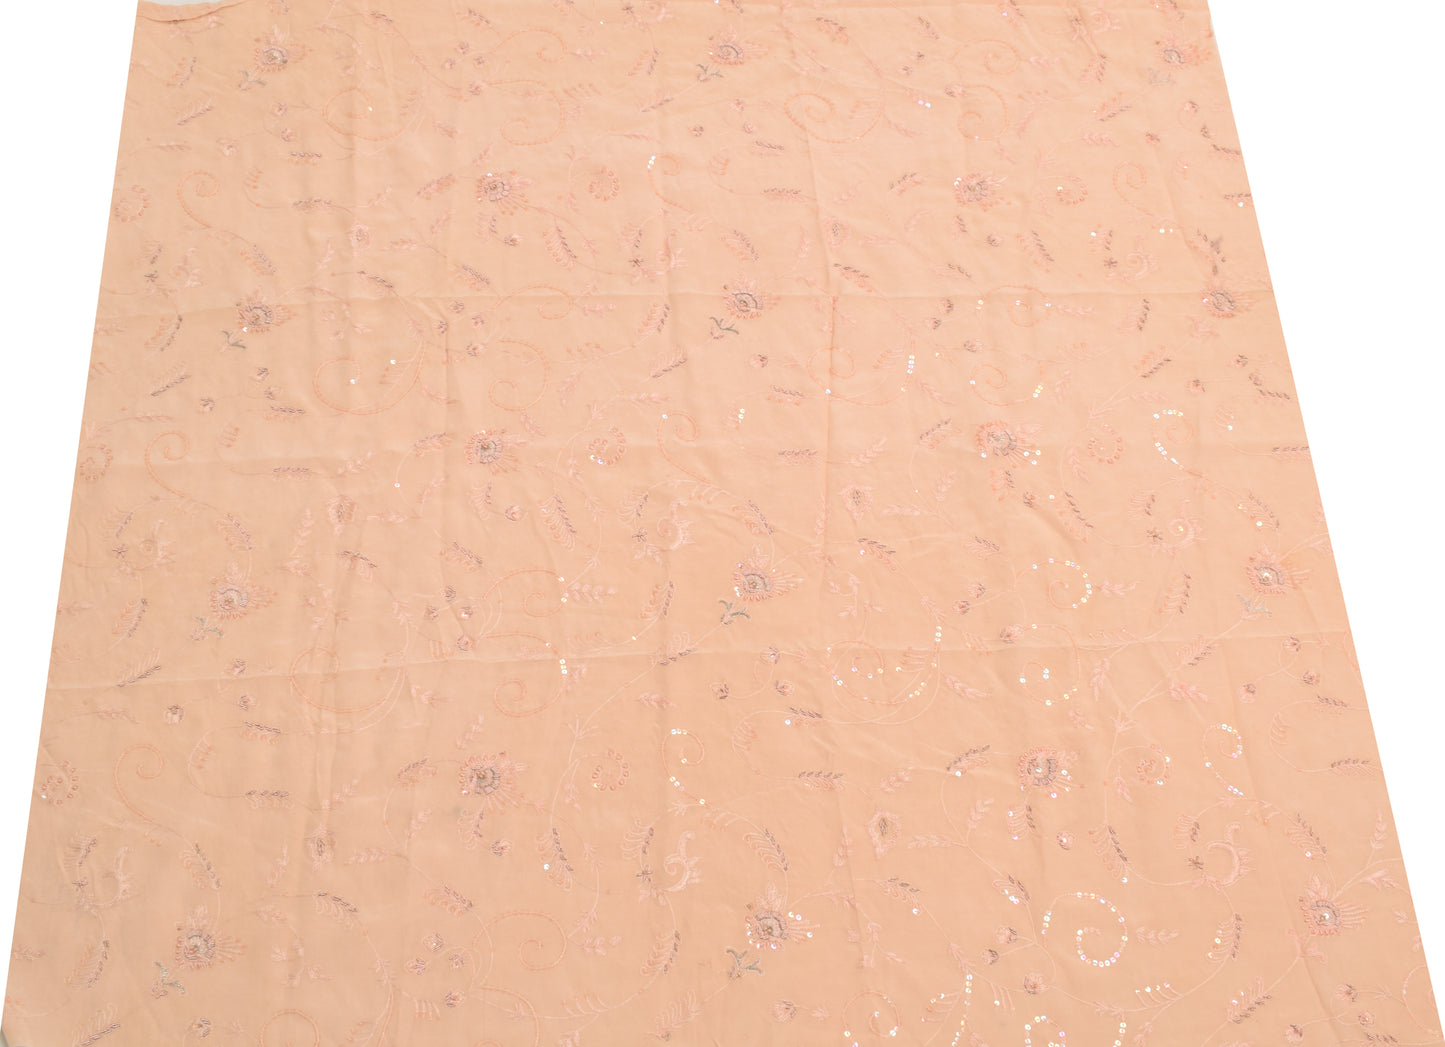 Sushila Vintage Peach Sari Remnant Scrap Multi Purpose Hand Beaded Craft Fabric